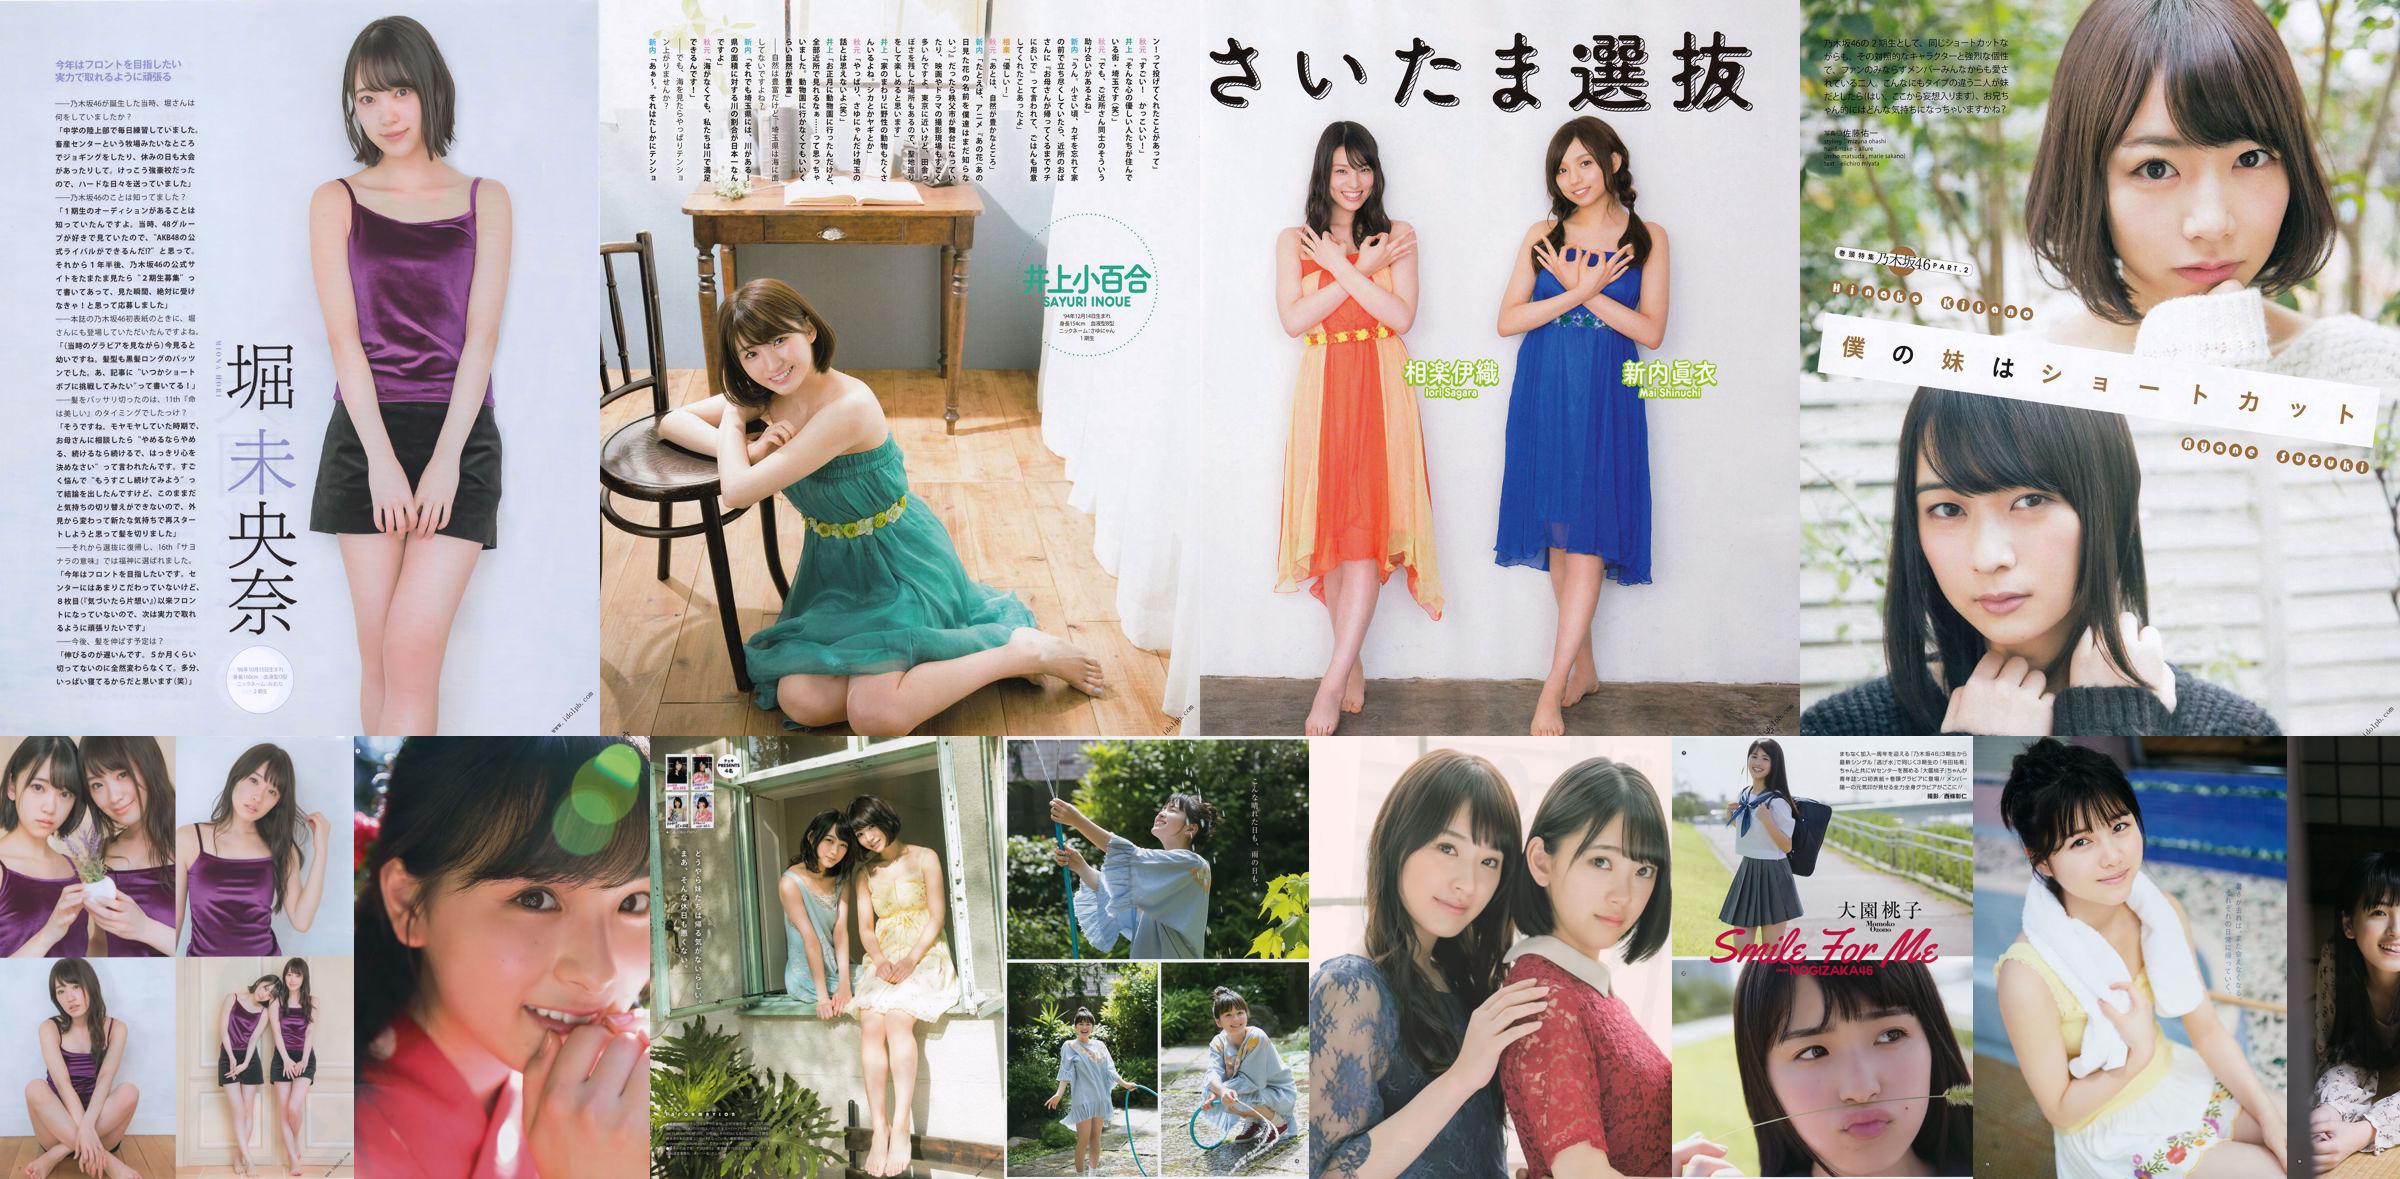 [Young Gangan] Momoko Oen, Sumi Sakaguchi 2018 No.15 Photo Magazine No.cacc00 Page 1